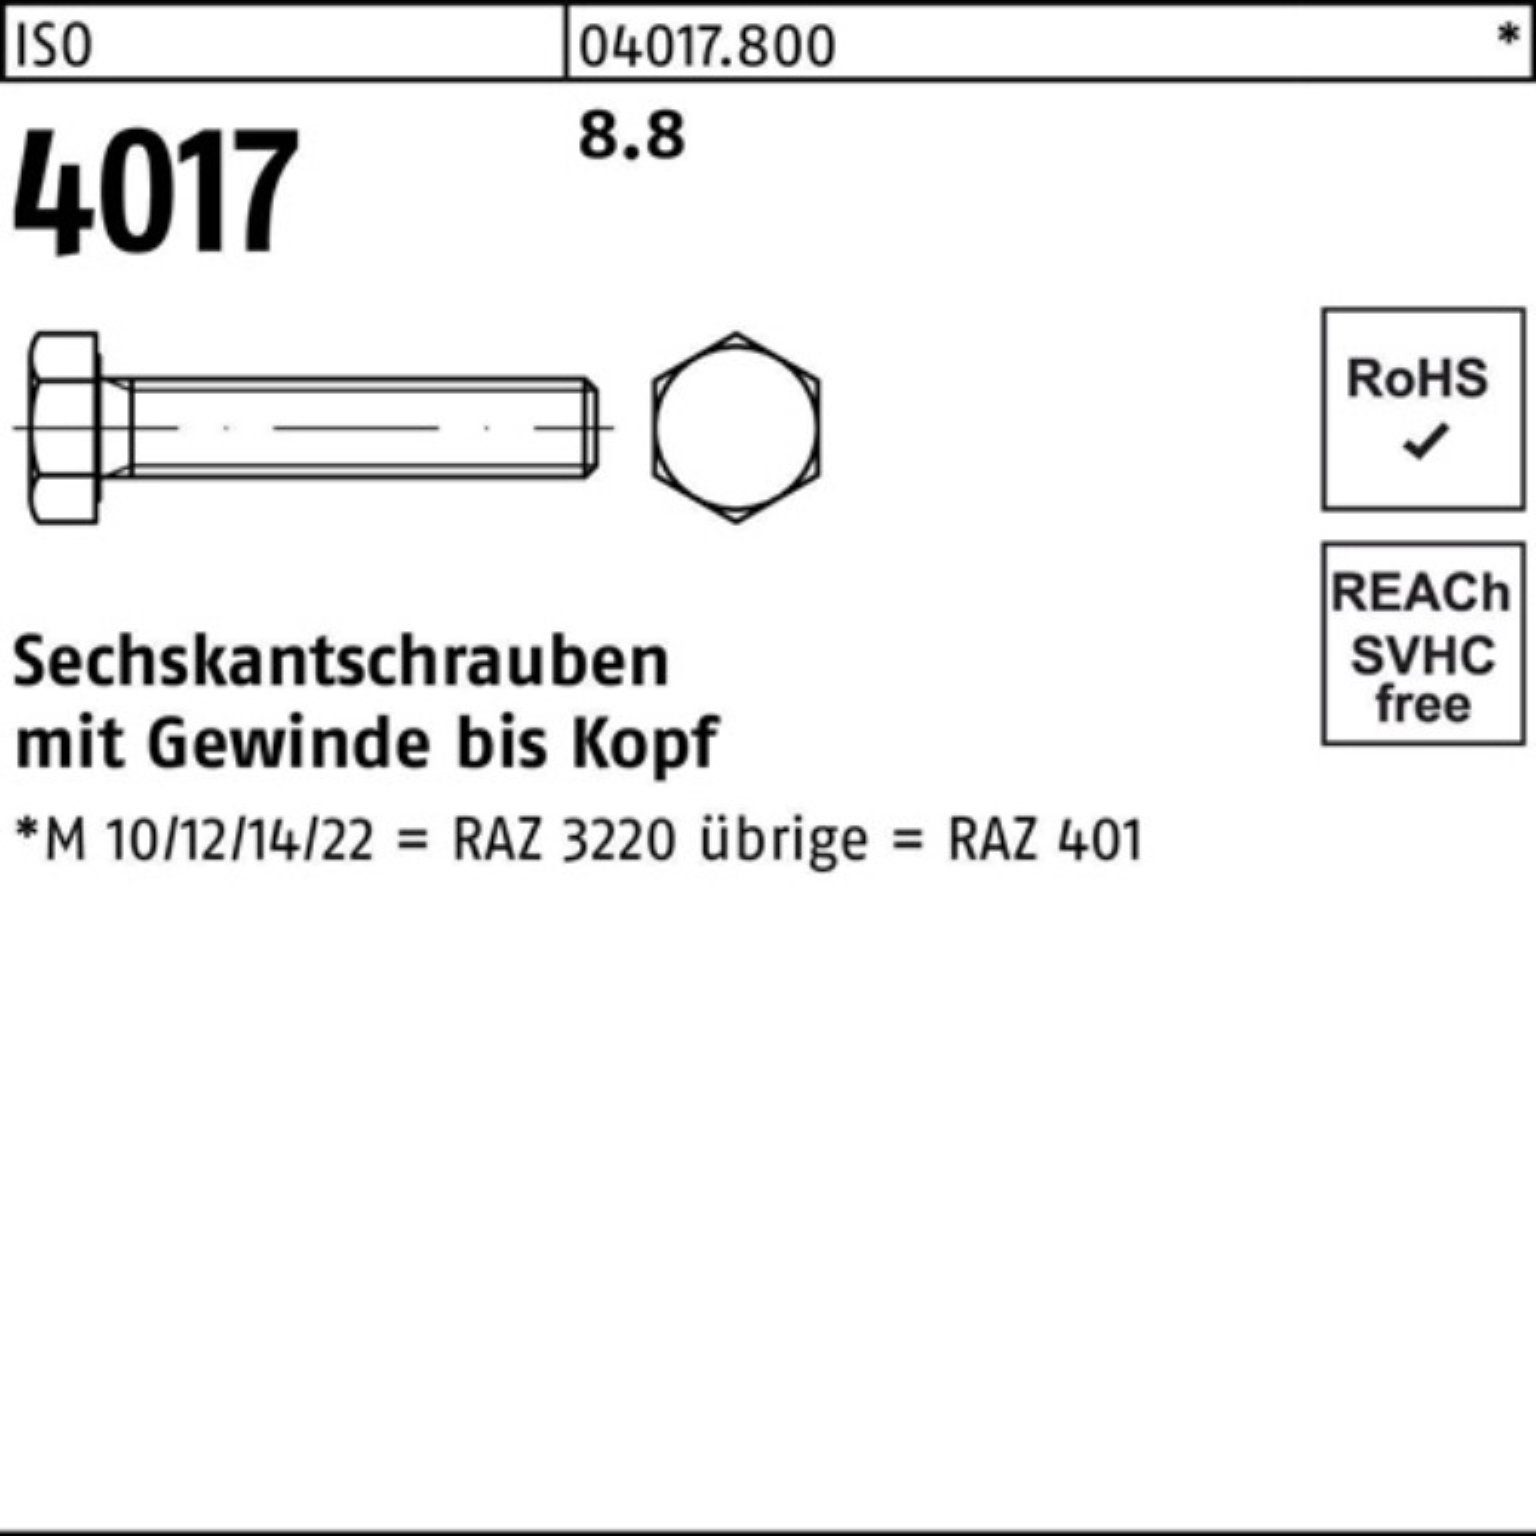 ISO Bufab Sechskantschraube Stück 40 100er Pack 4017 M12x 8.8 45 100 ISO Sechskantschraube VG